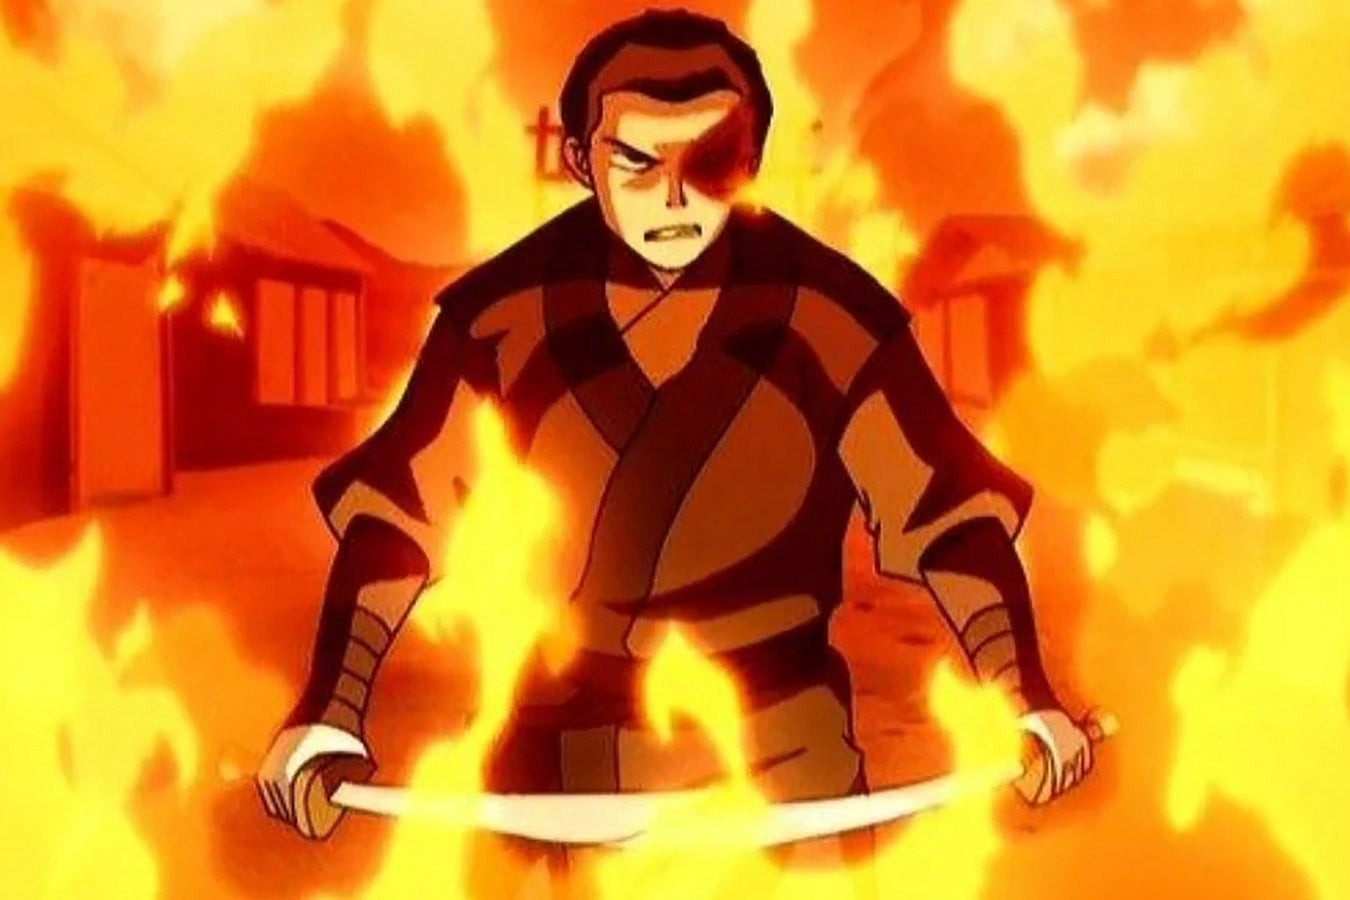 A boy dressed as a samurai walks through flames.